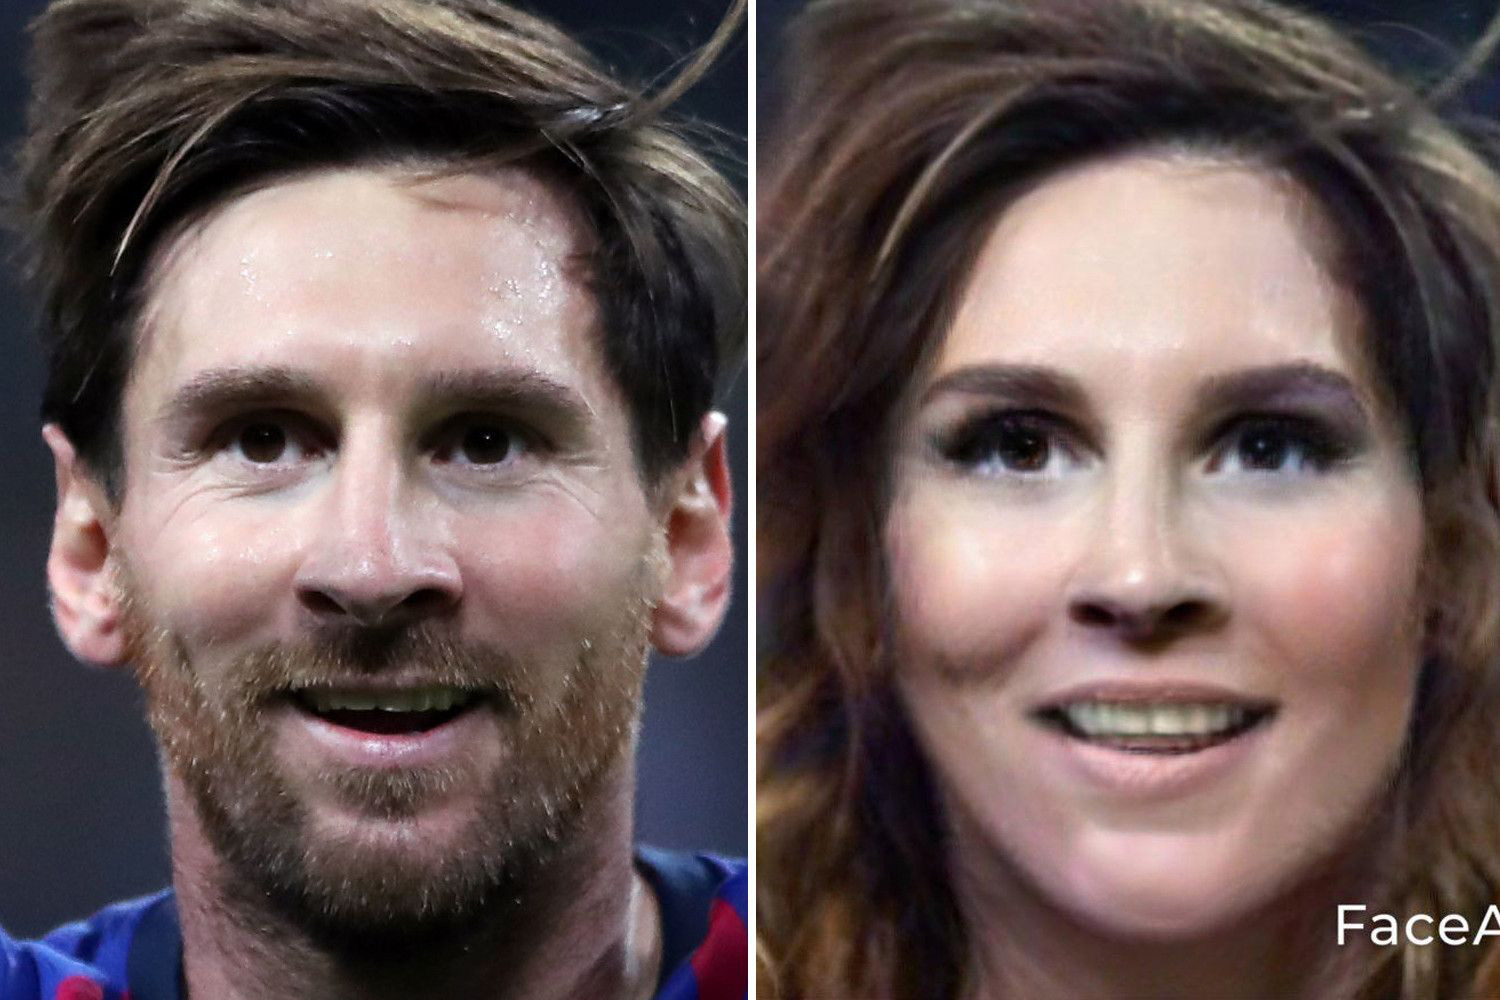 Ngỡ ngàng trước diện mạo của các sao bóng đá nếu là nữ: Ronaldo trông khá cứng, Messi xứng đáng là cực phẩm - Ảnh 3.